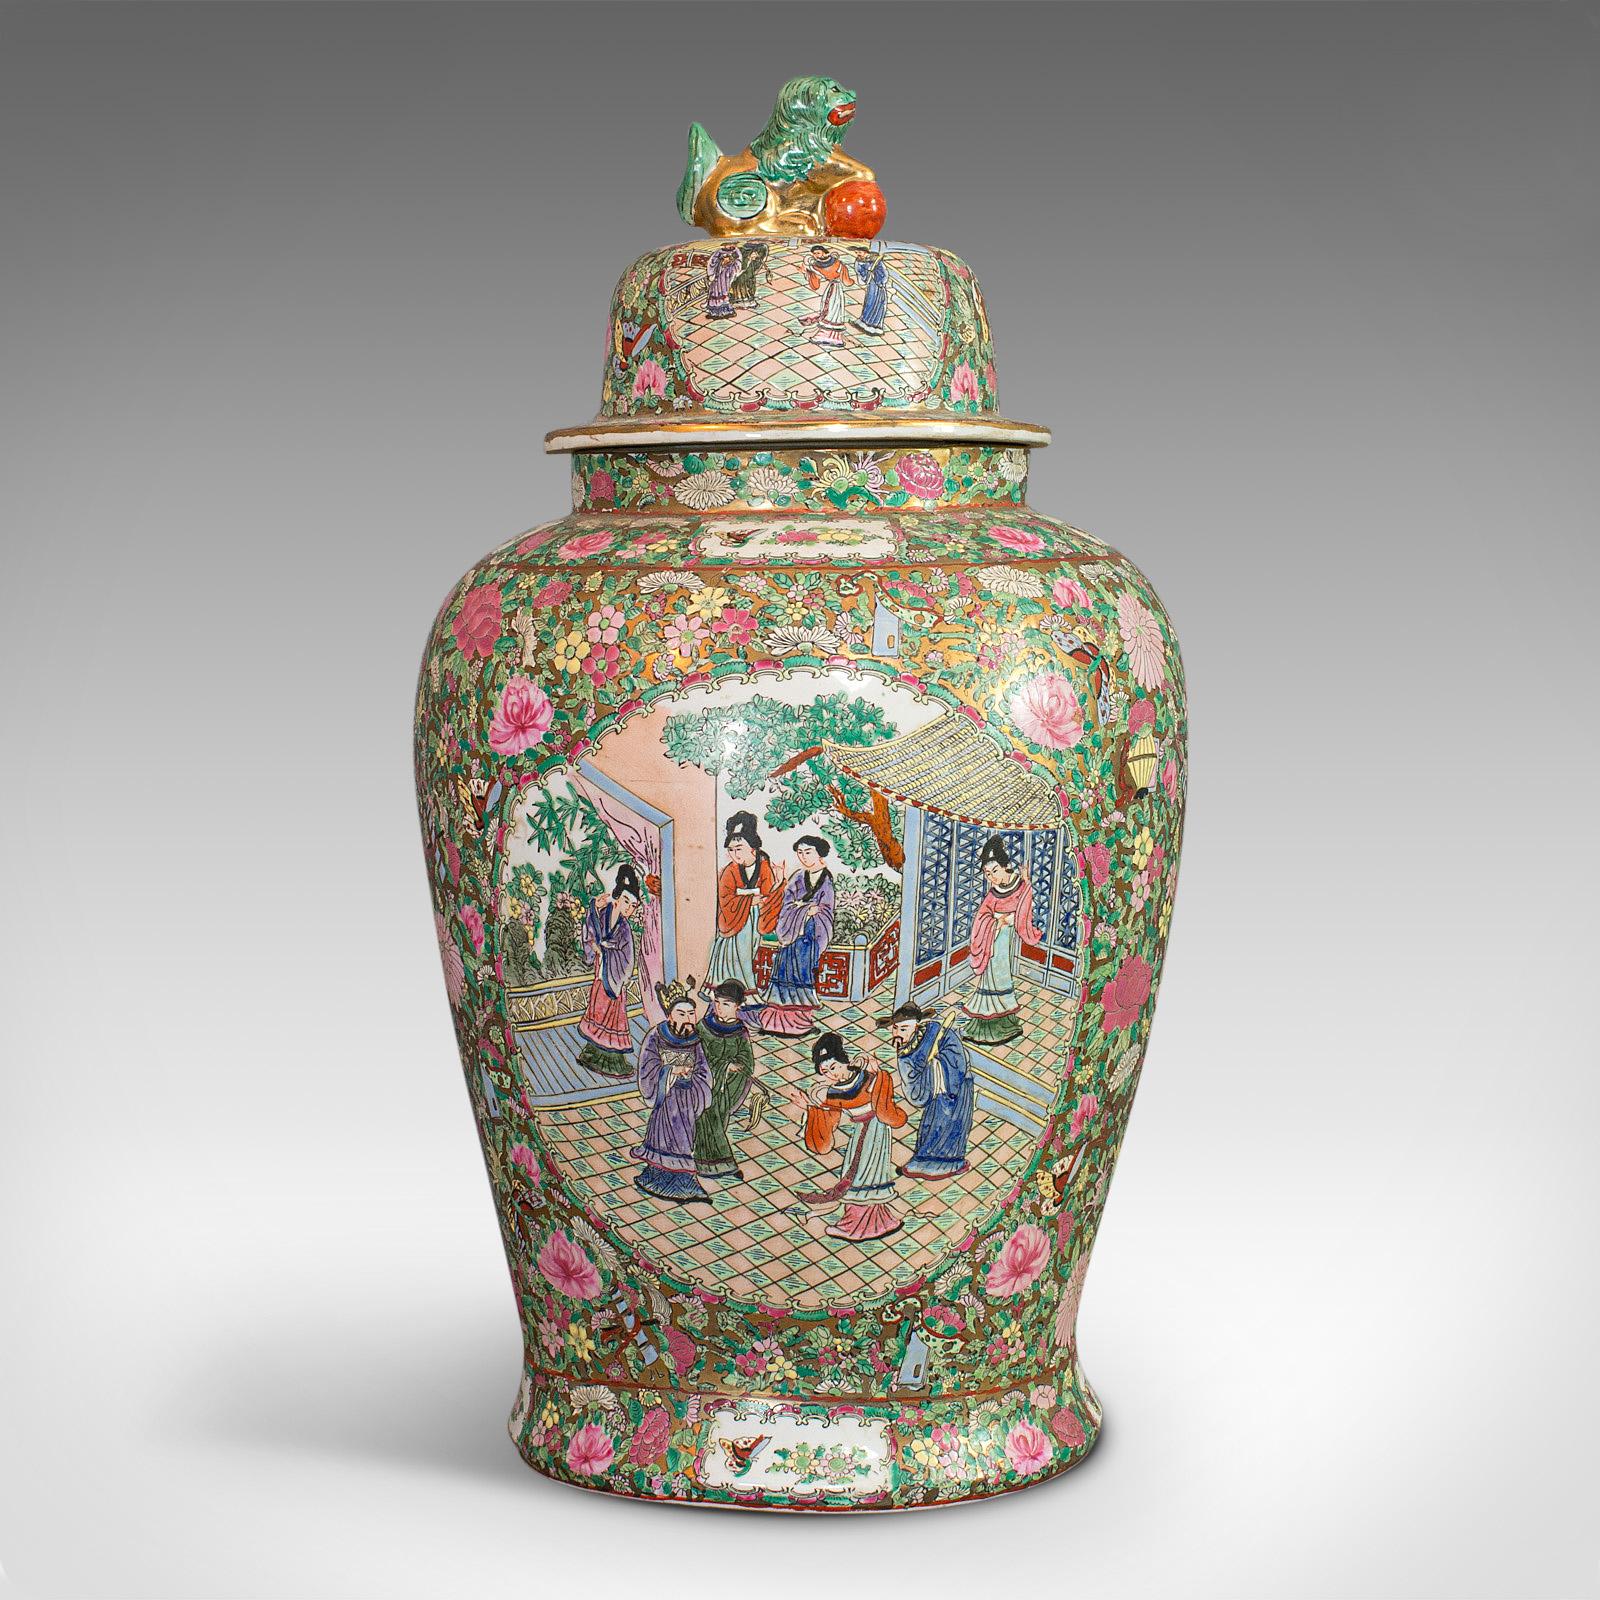 Il s'agit d'une paire de grandes urnes balustres vintage. Un ensemble oriental en céramique de la période Art déco, datant du milieu du 20e siècle, vers 1940.

Merveilleuse taille de plus de 2 pieds de haut et abondamment décorée
Affiche une